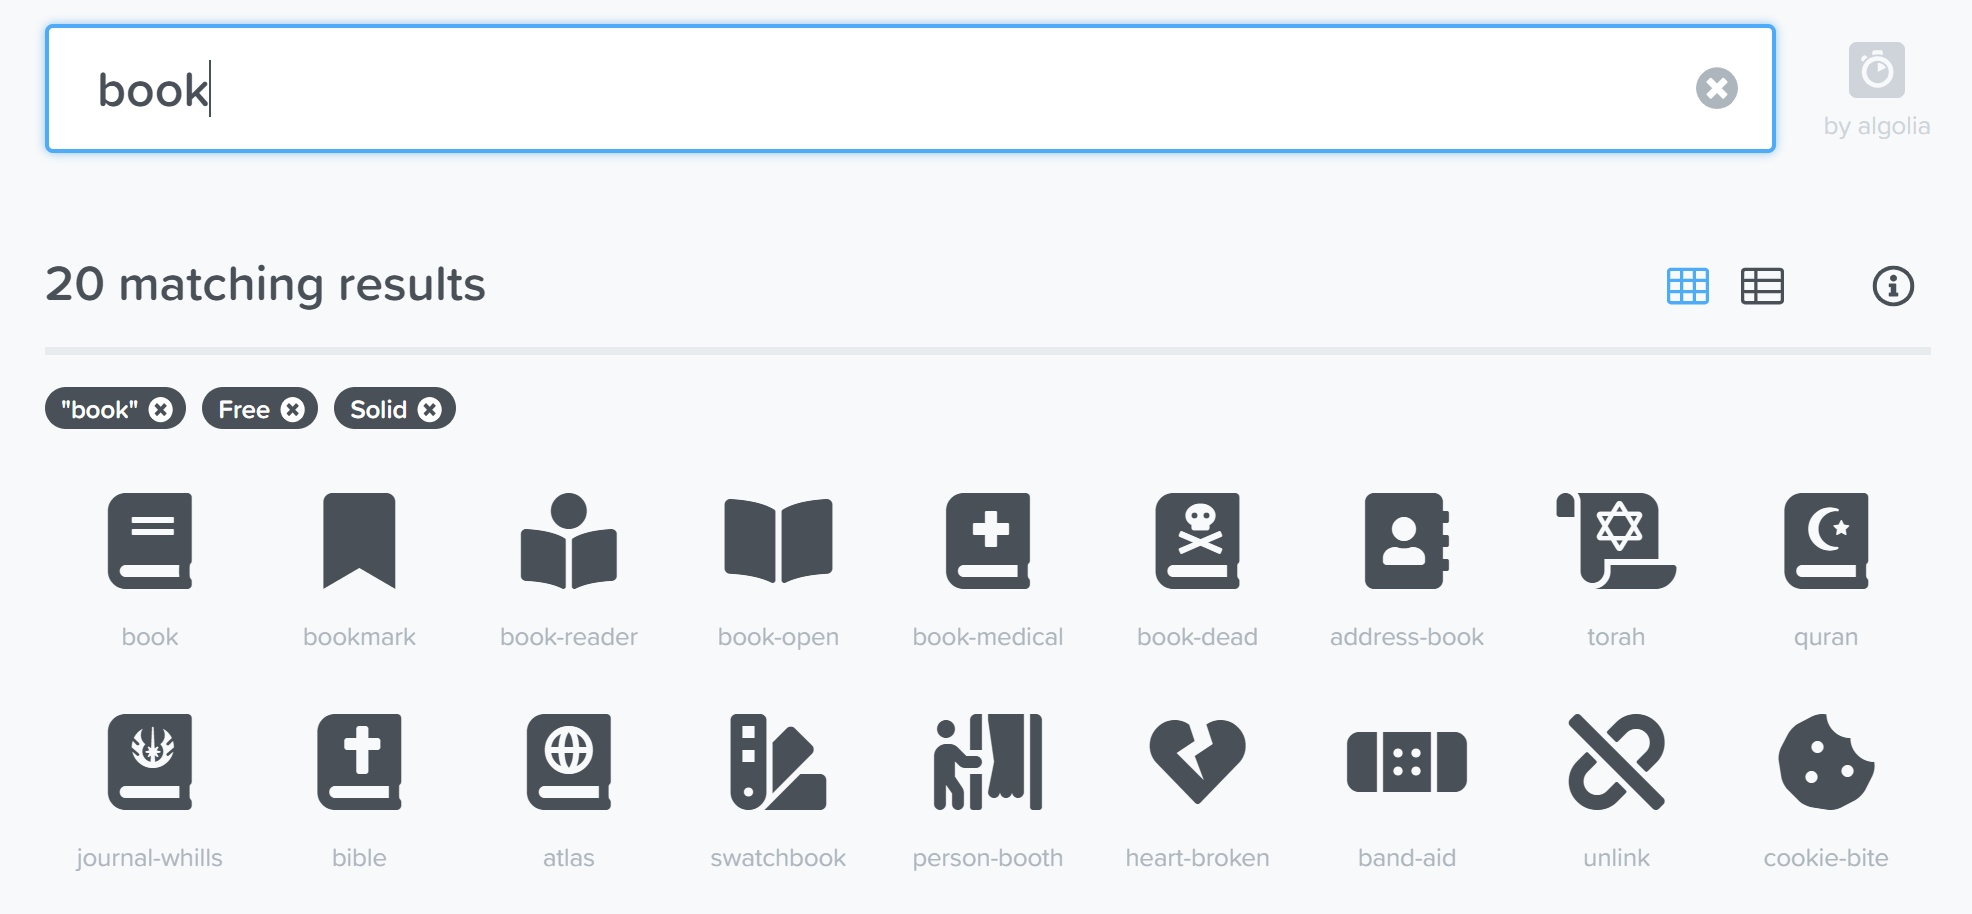 Trải nghiệm của người dùng khi sử dụng những icon của Font Awesome đã được nâng cao với những cải tiến mới. Thời gian tải trang được rút ngắn, các icon được tối ưu hoá kích thước để hiển thị đẹp hơn và dễ nhìn hơn. Hãy truy cập trang portal của chúng tôi để trải nghiệm ngay bây giờ!